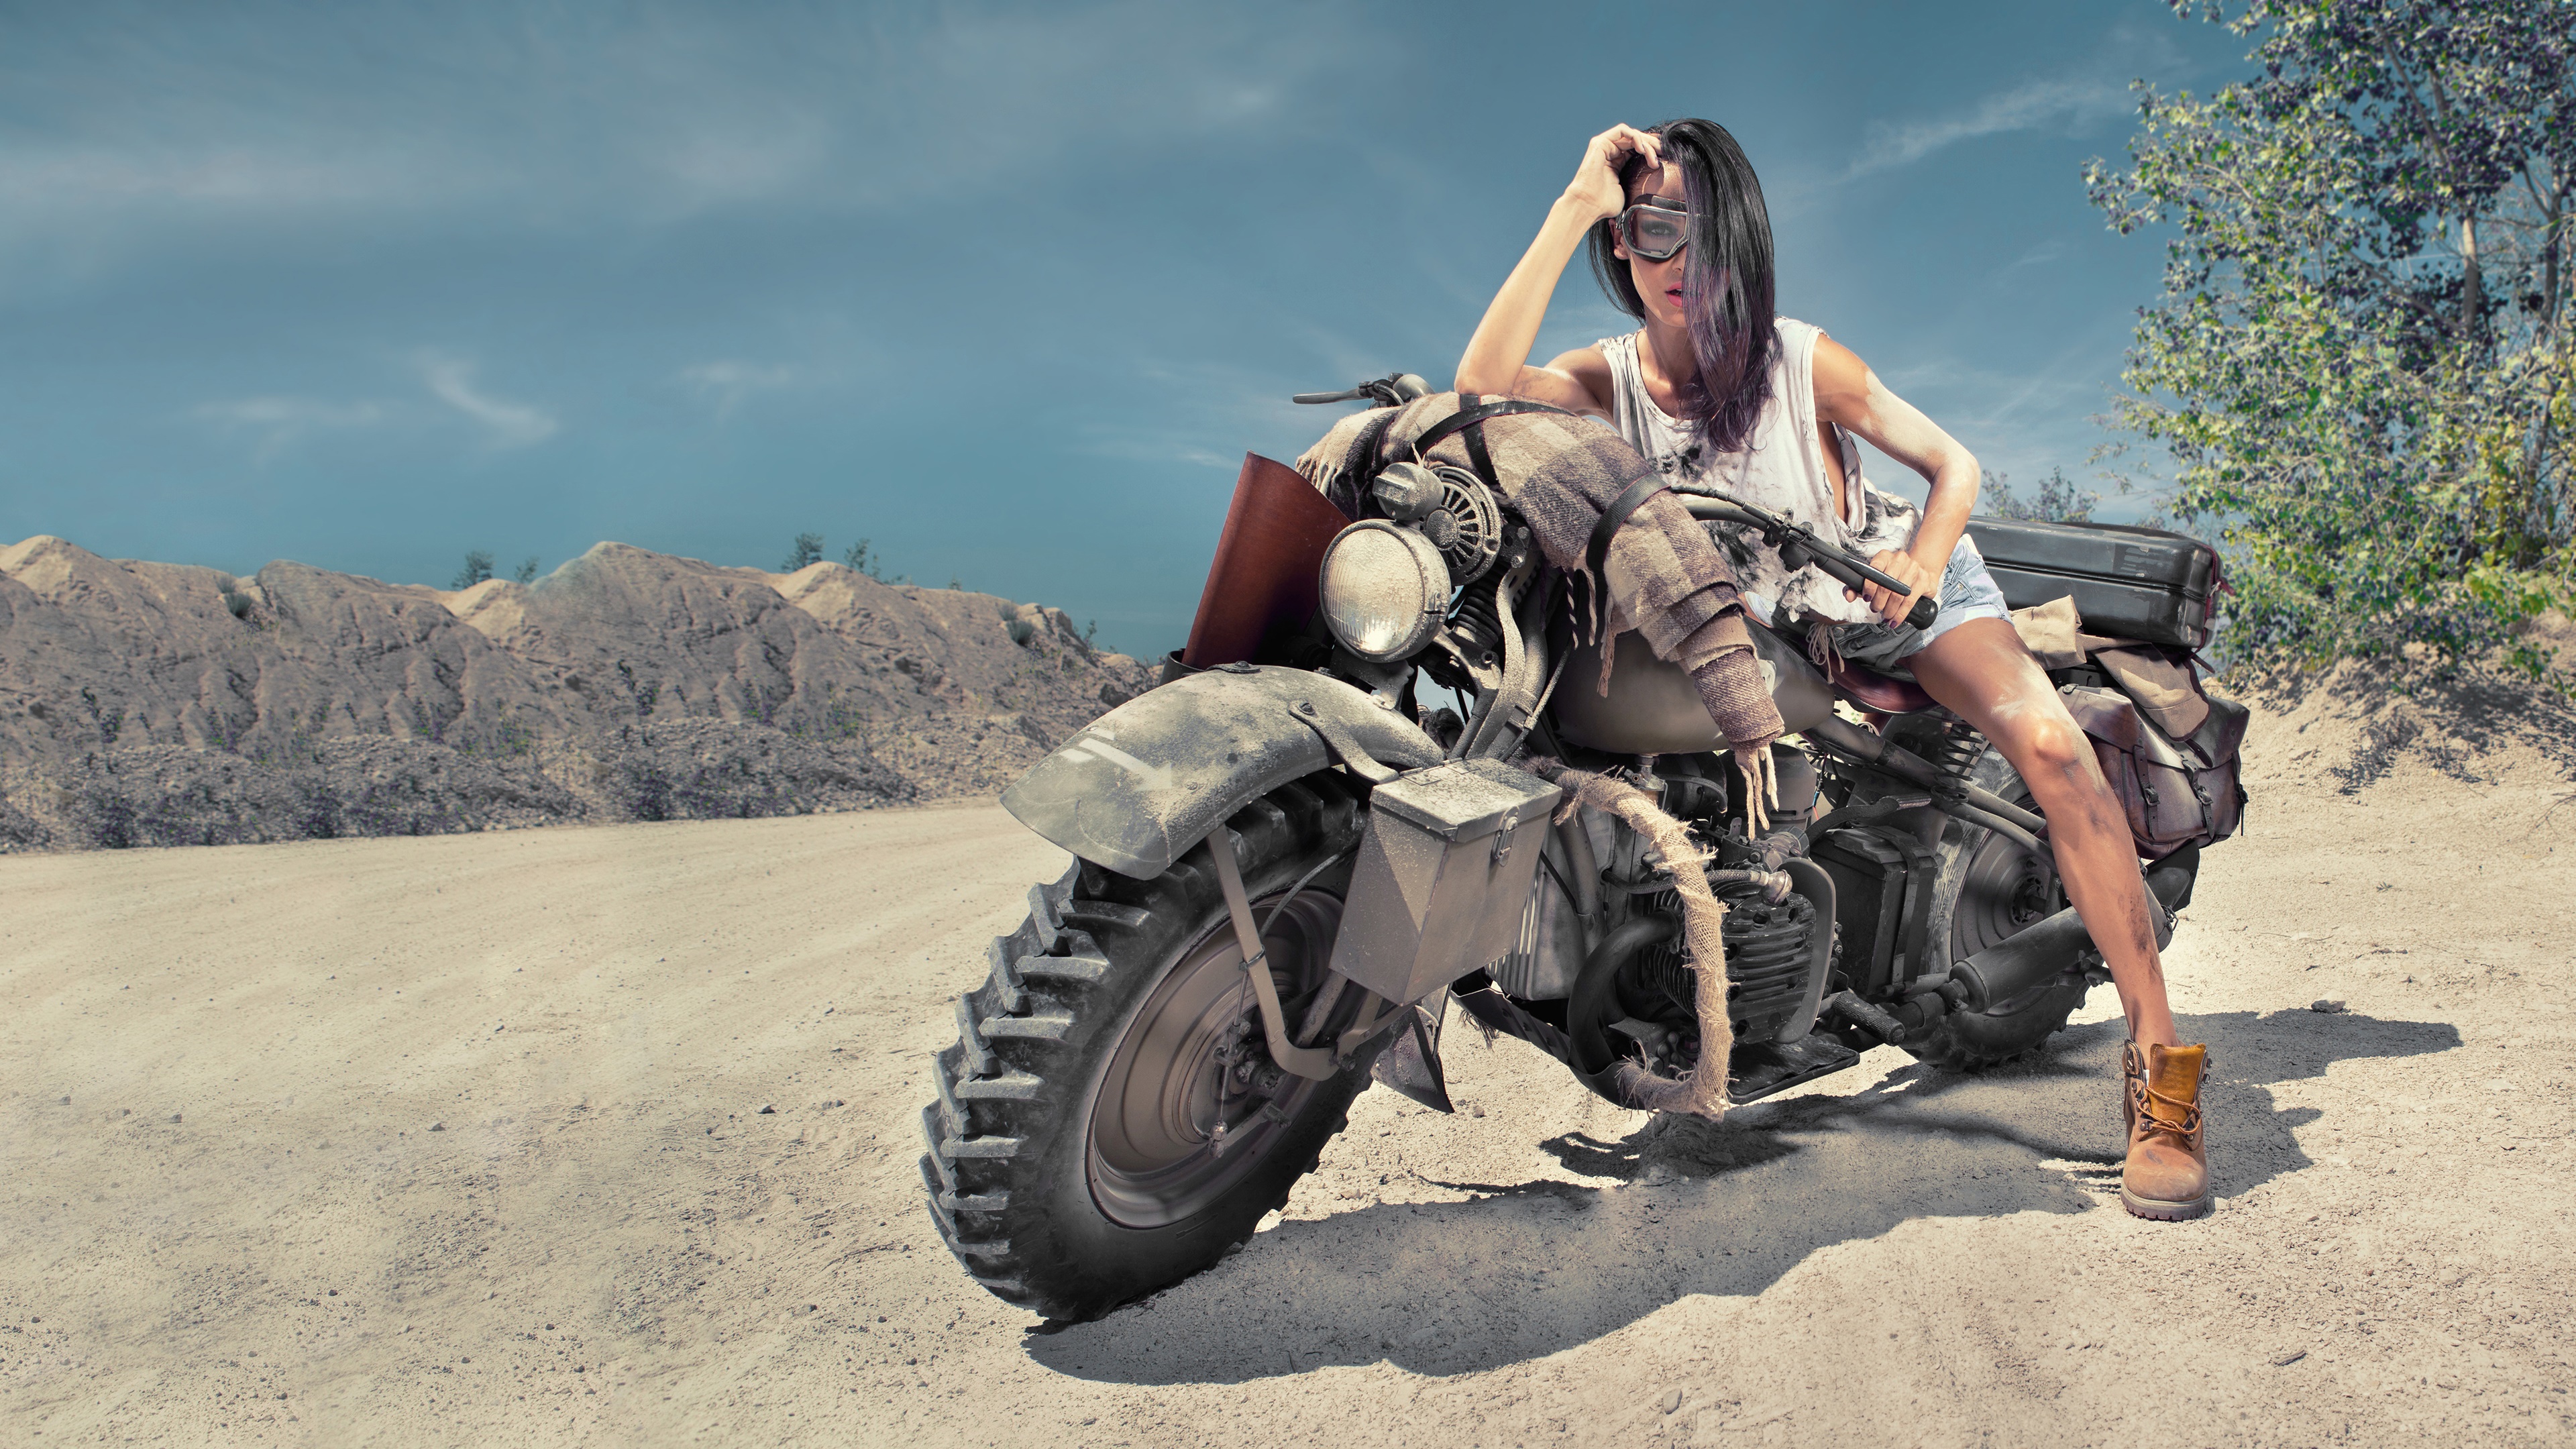 Girl On Desert Offroad Bike 4k - Offroad - HD Wallpaper 